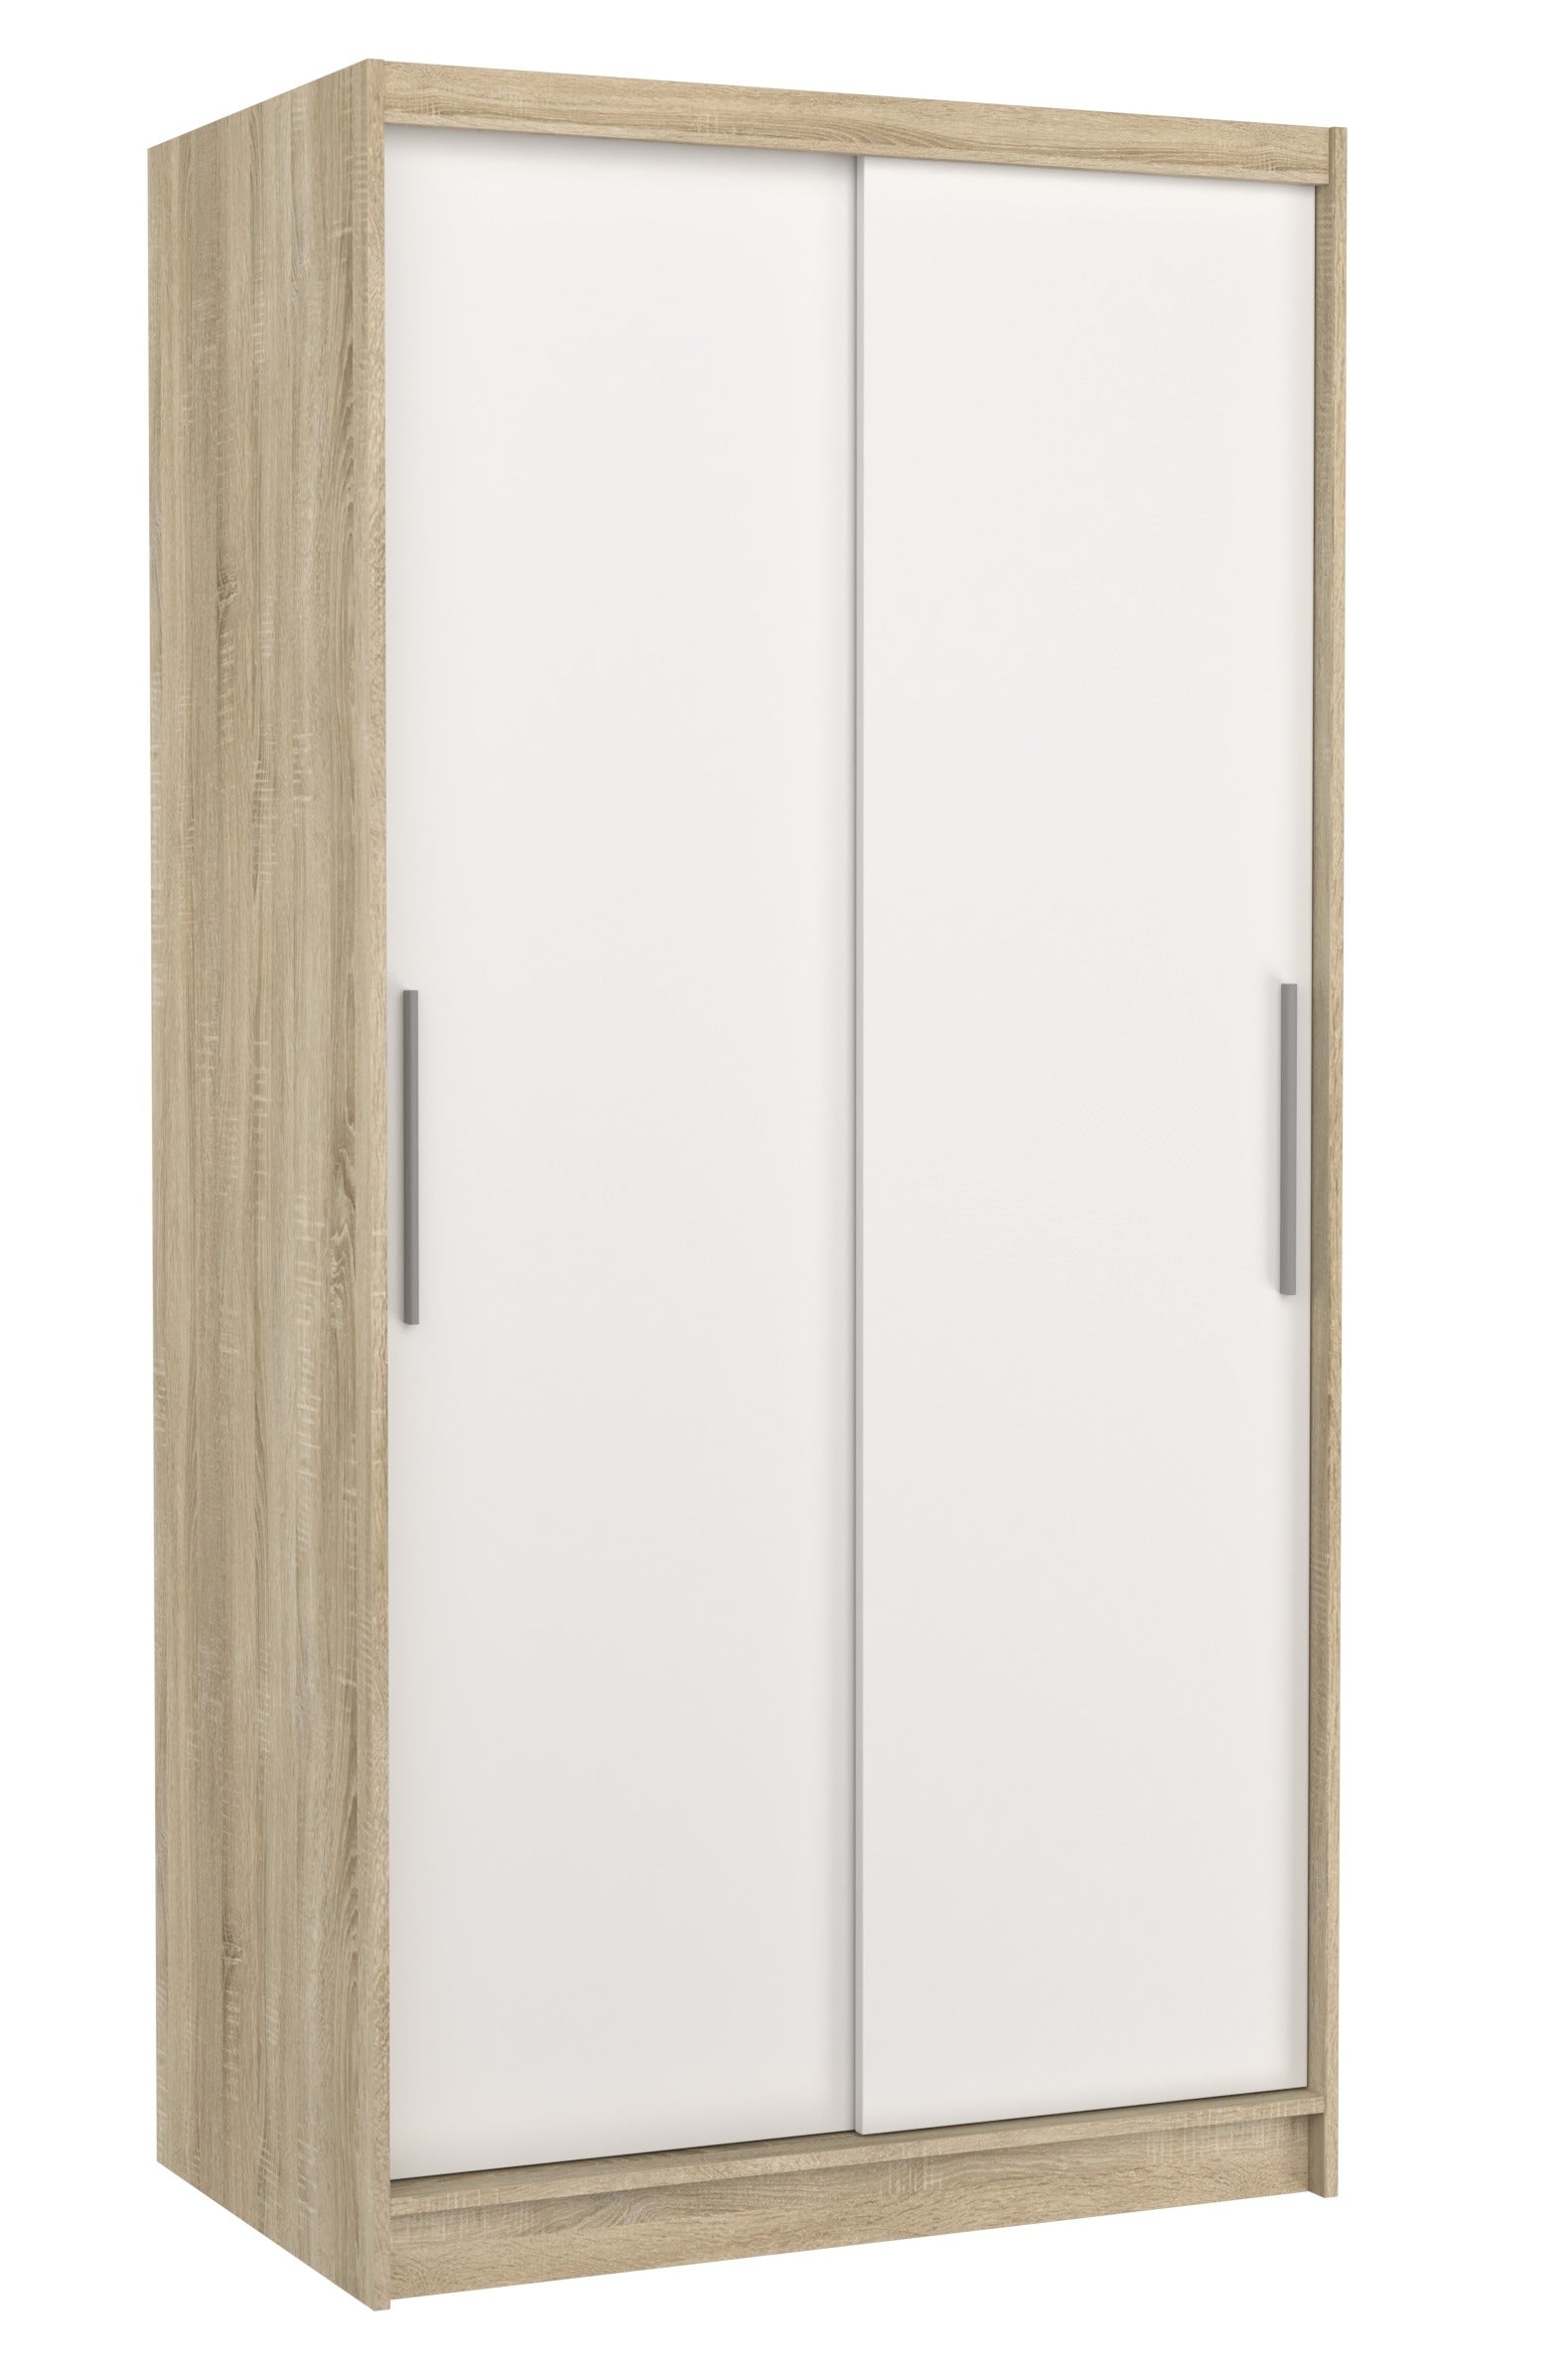 Petite armoire 2 portes coulissantes n en Chêne de Ligne contemporaine  Hauteur 180 cm 4 étagères de chaque côté , meuble en Chêne